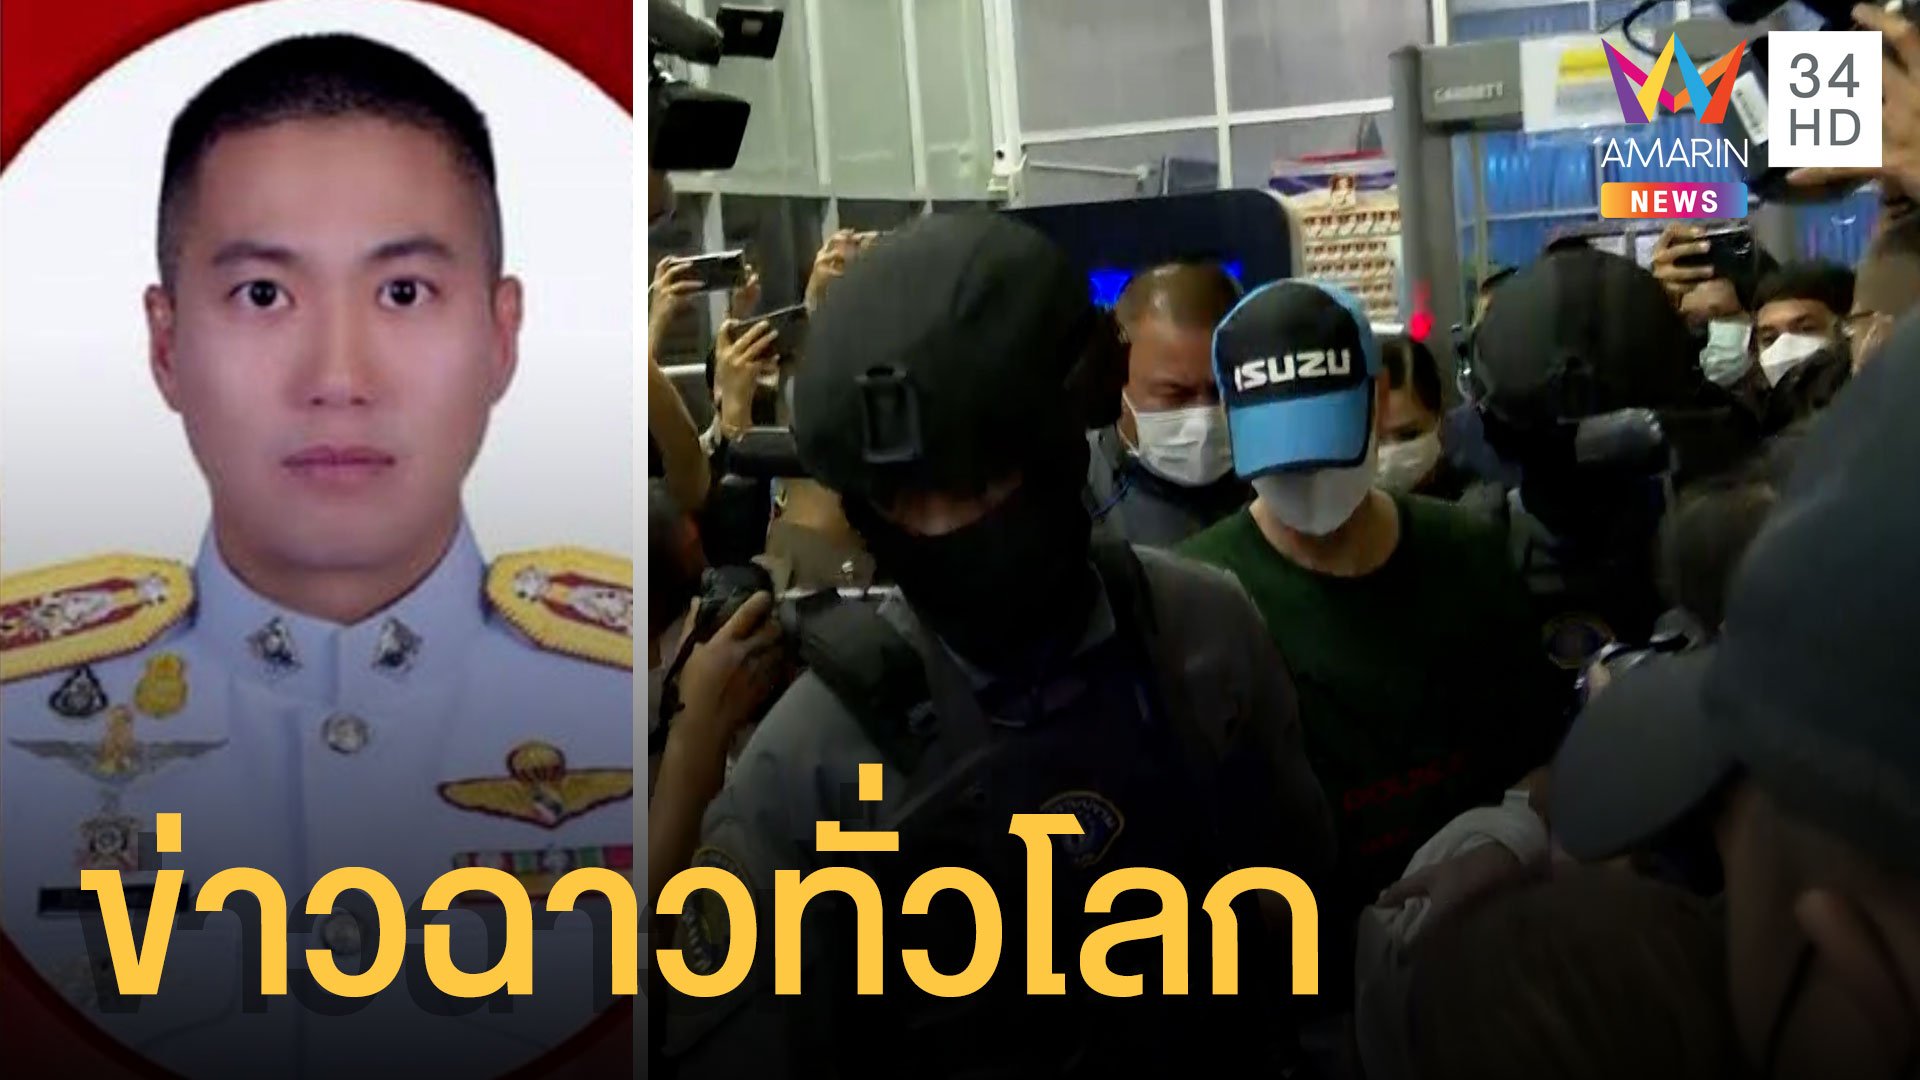 คดีผู้กำกับโจ้ฉาวทั่วโลก สื่อนอกตีข่าวเรื่องทุจริตในไทยเจอไม่ยาก | ข่าวอรุณอมรินทร์ | 27 ส.ค. 64 | AMARIN TVHD34